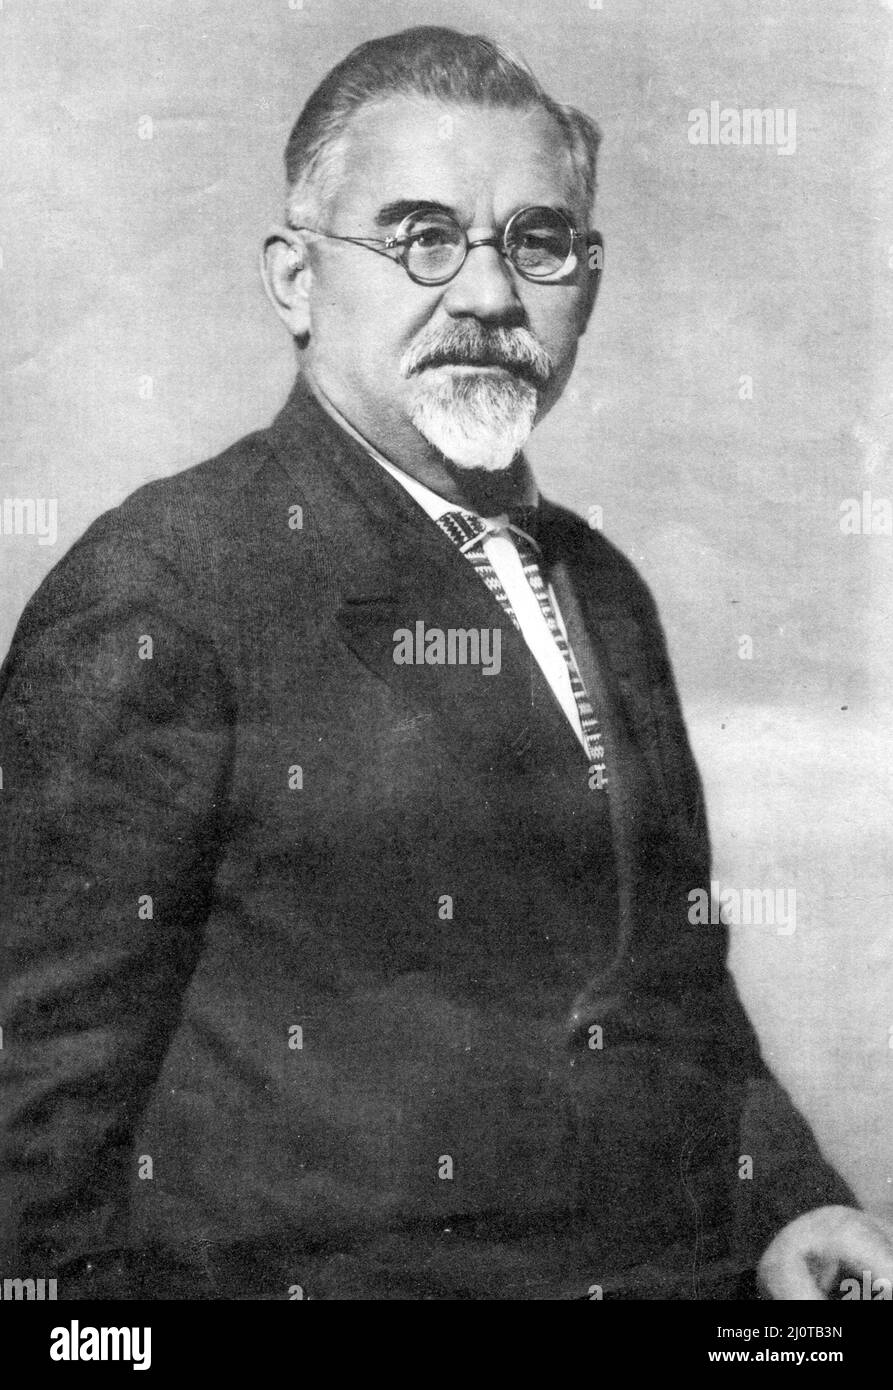 Grigory Ivanovitch Petrovsky (1878 - 1958) politicien soviétique d'Ukraine et ancien bolchevique. Il a participé à la signature du Traité sur la création de l'URSS et du Traité de Brest-Litovsk. Petrovsky était le chef du Parti communiste en Ukraine jusqu'en 1938, et l'un des responsables de la mise en œuvre de la politique de collectivisation de Staline. Banque D'Images